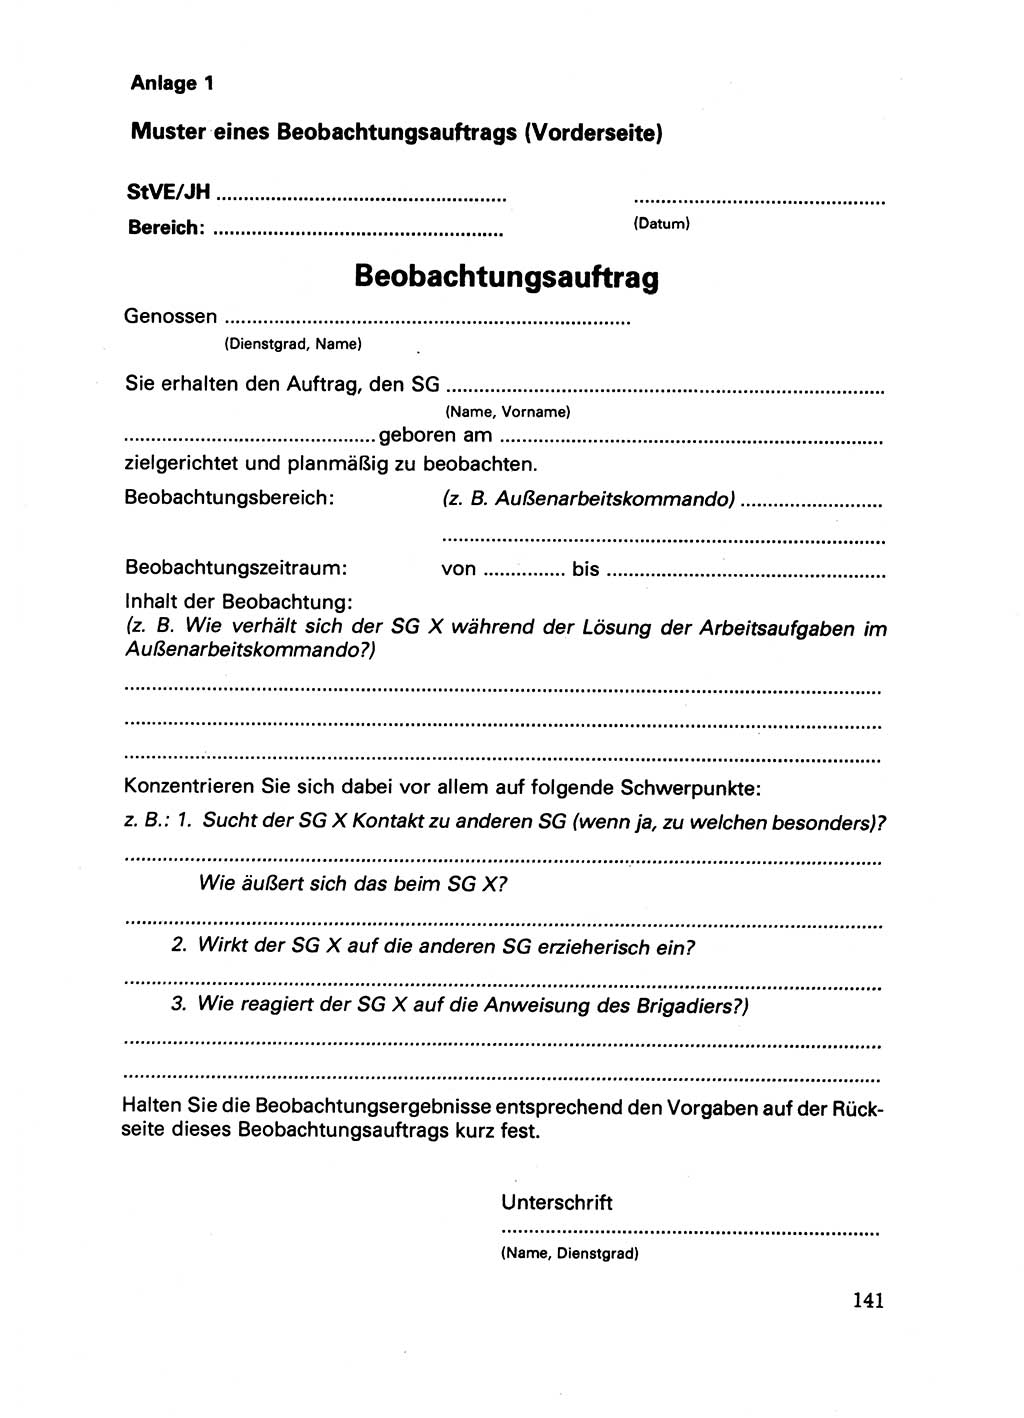 Handbuch für operative Dienste, Abteilung Strafvollzug (SV) [Ministerium des Innern (MdI) Deutsche Demokratische Republik (DDR)] 1981, Seite 141 (Hb. op. D. Abt. SV MdI DDR 1981, S. 141)